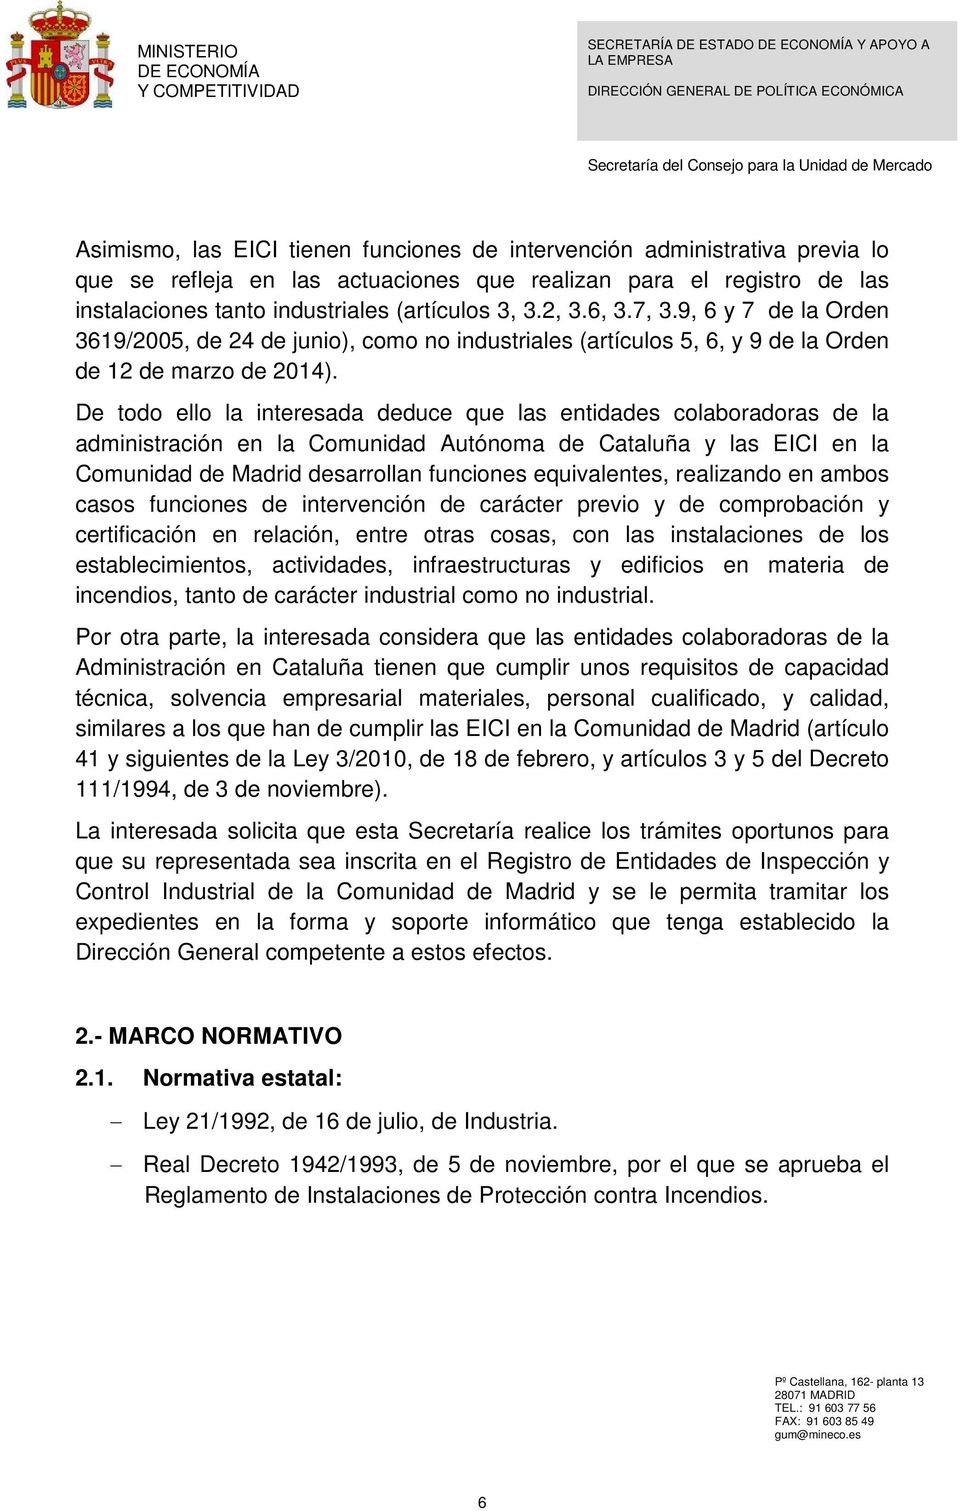 De todo ello la interesada deduce que las entidades colaboradoras de la administración en la Comunidad Autónoma de Cataluña y las EICI en la Comunidad de Madrid desarrollan funciones equivalentes,